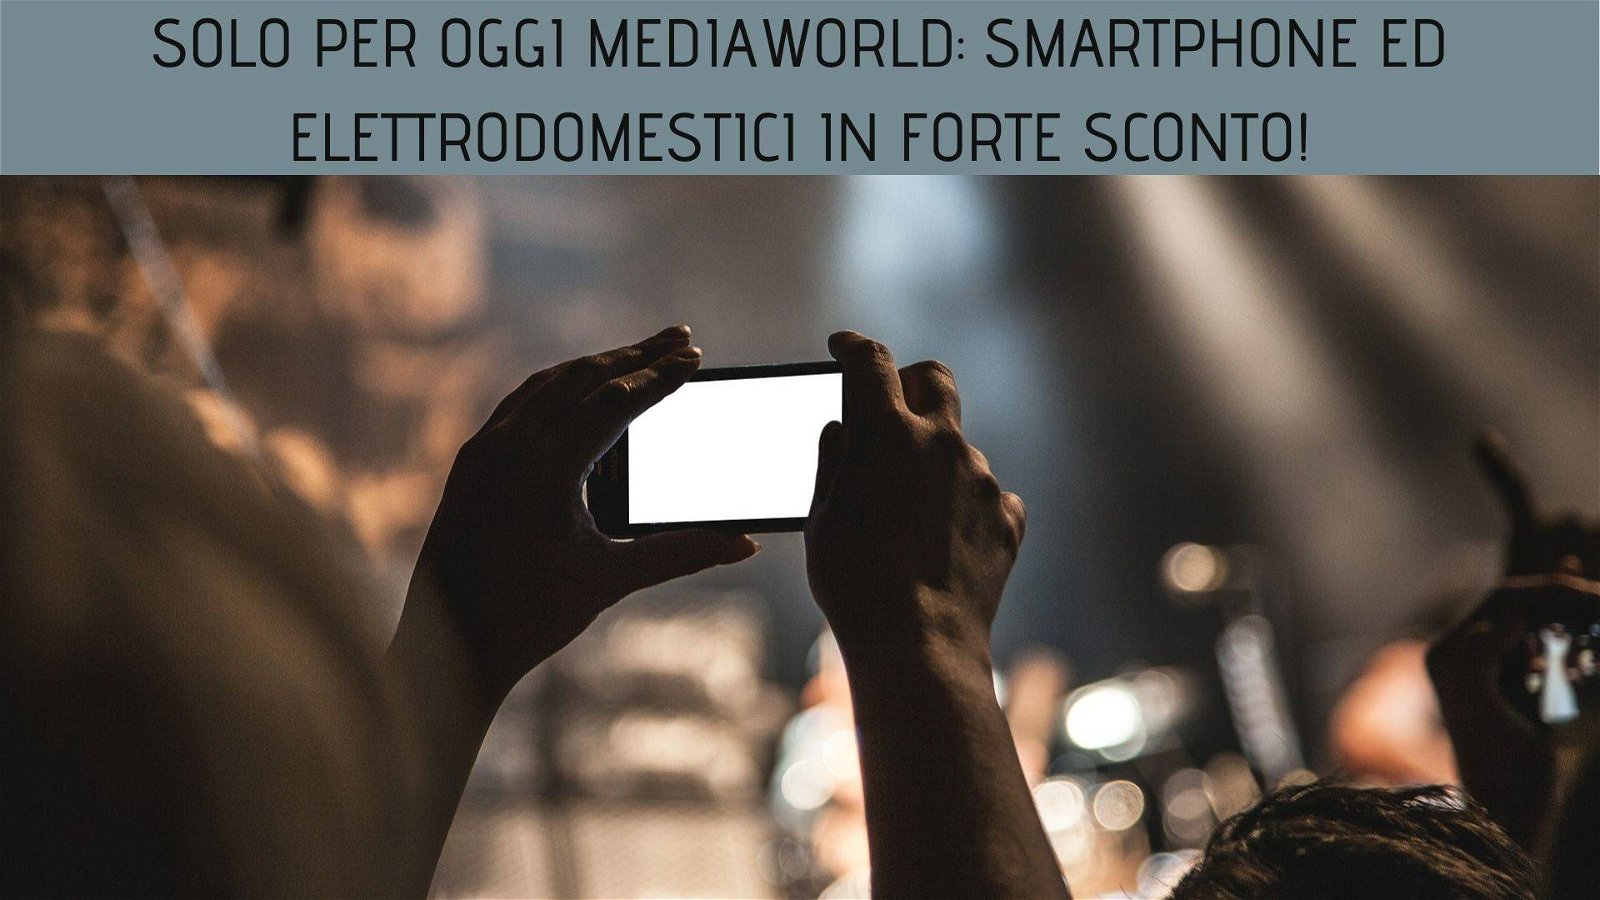 Immagine di Solo per oggi Mediaworld: smartphone ed elettrodomestici in forte sconto!